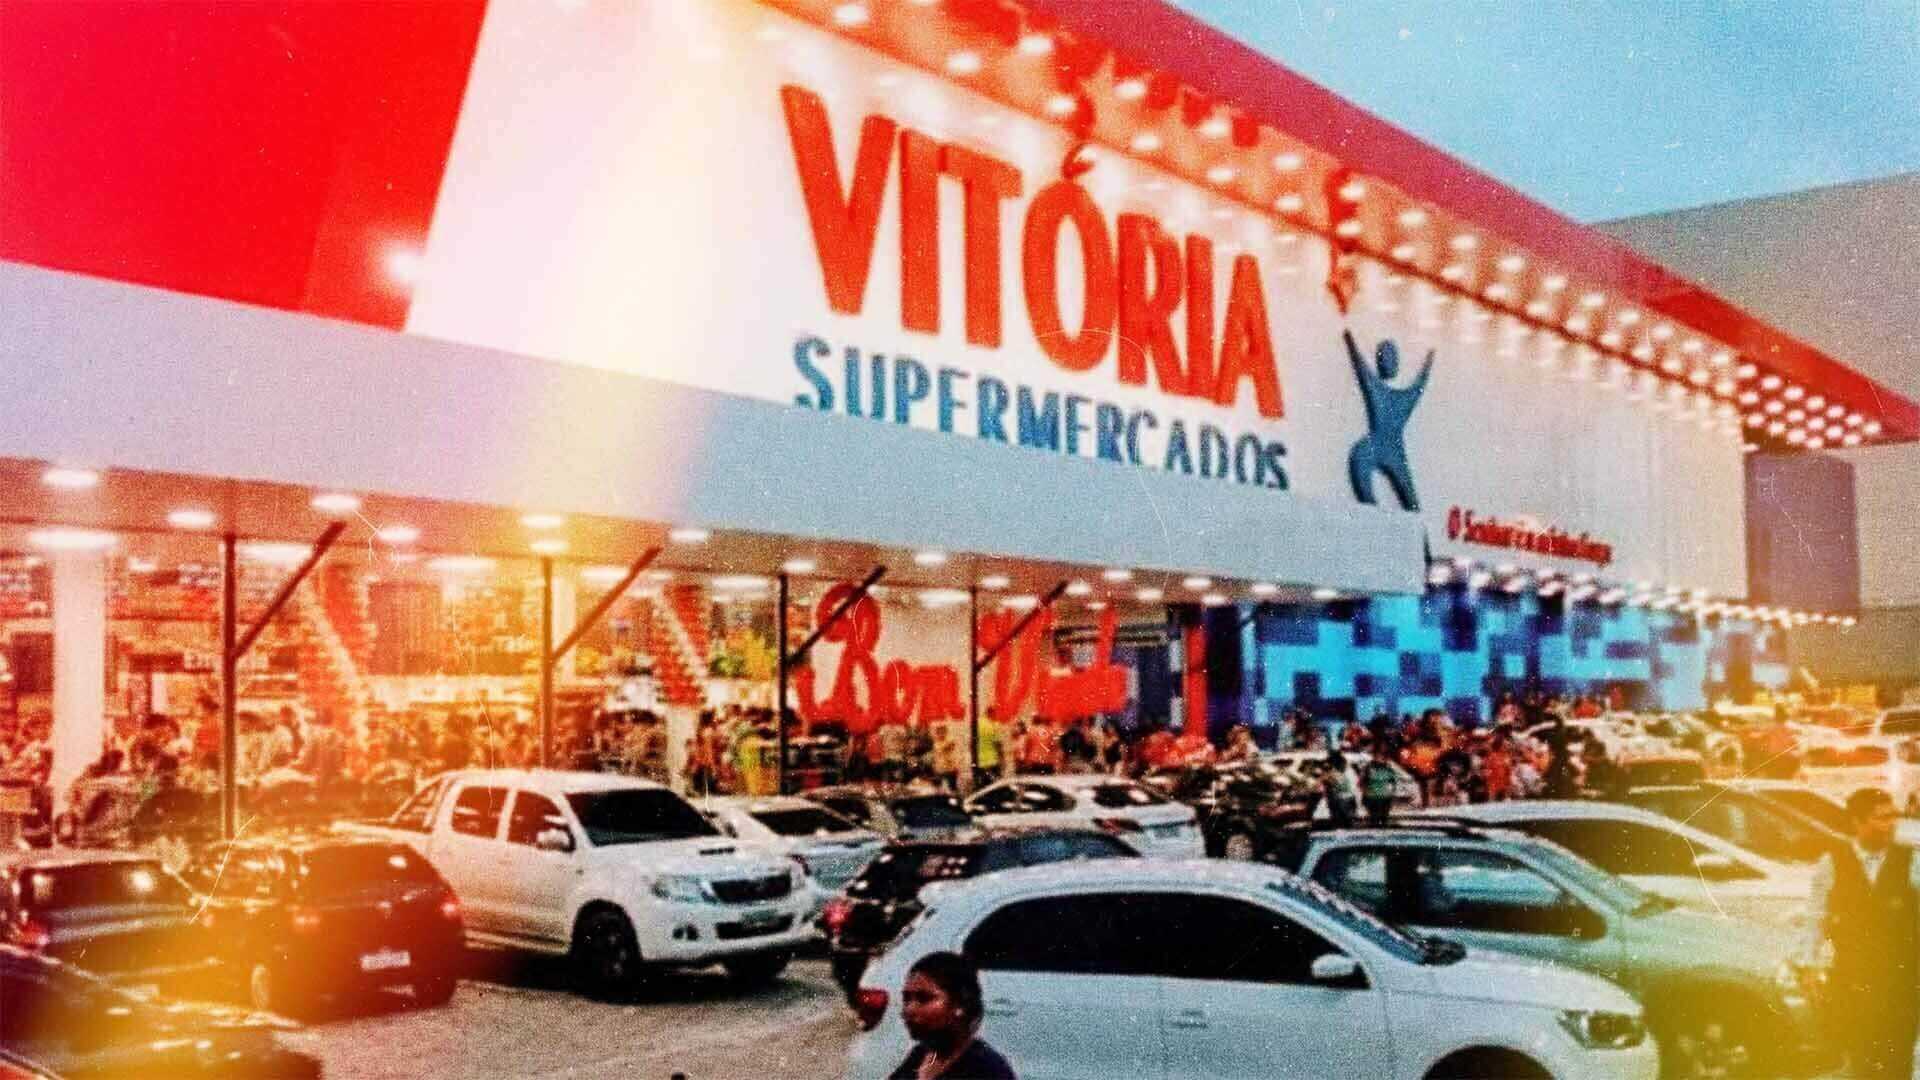 Fachada frontal do Vitória Supermercados